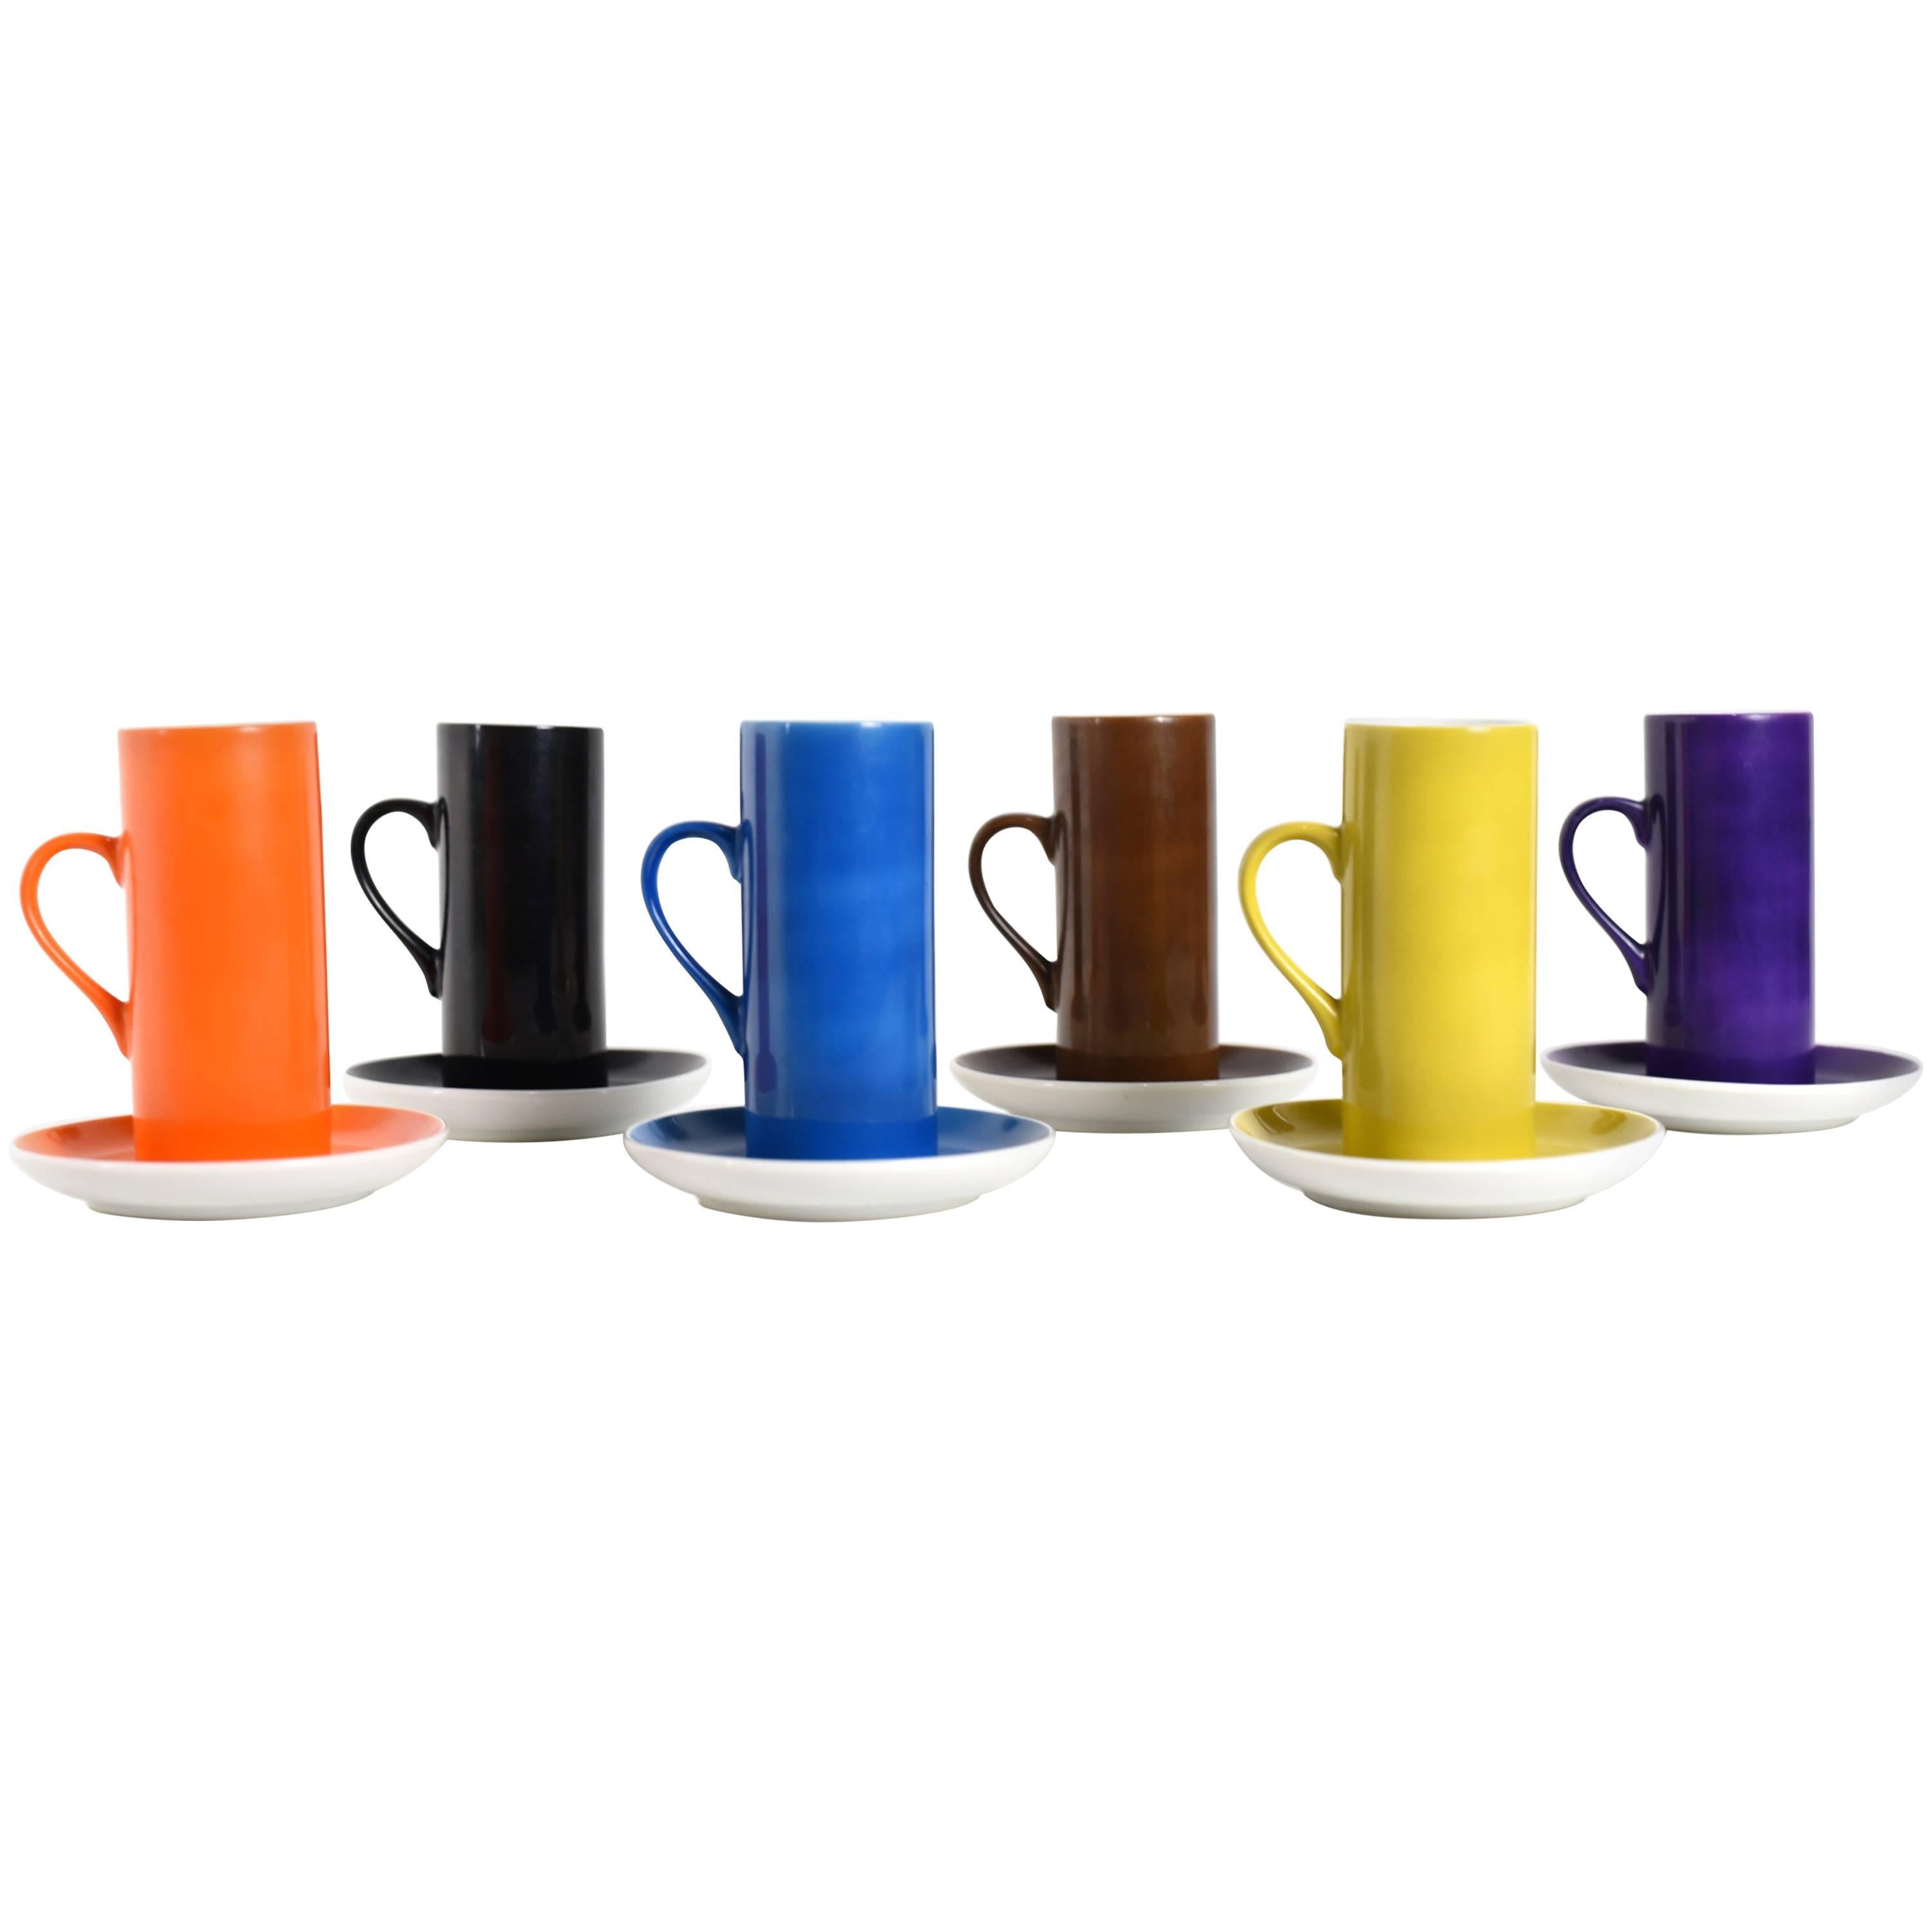 La Gardo Tackett Set of Six Espresso / Demitasse Cups Set by Schmid, 1960s